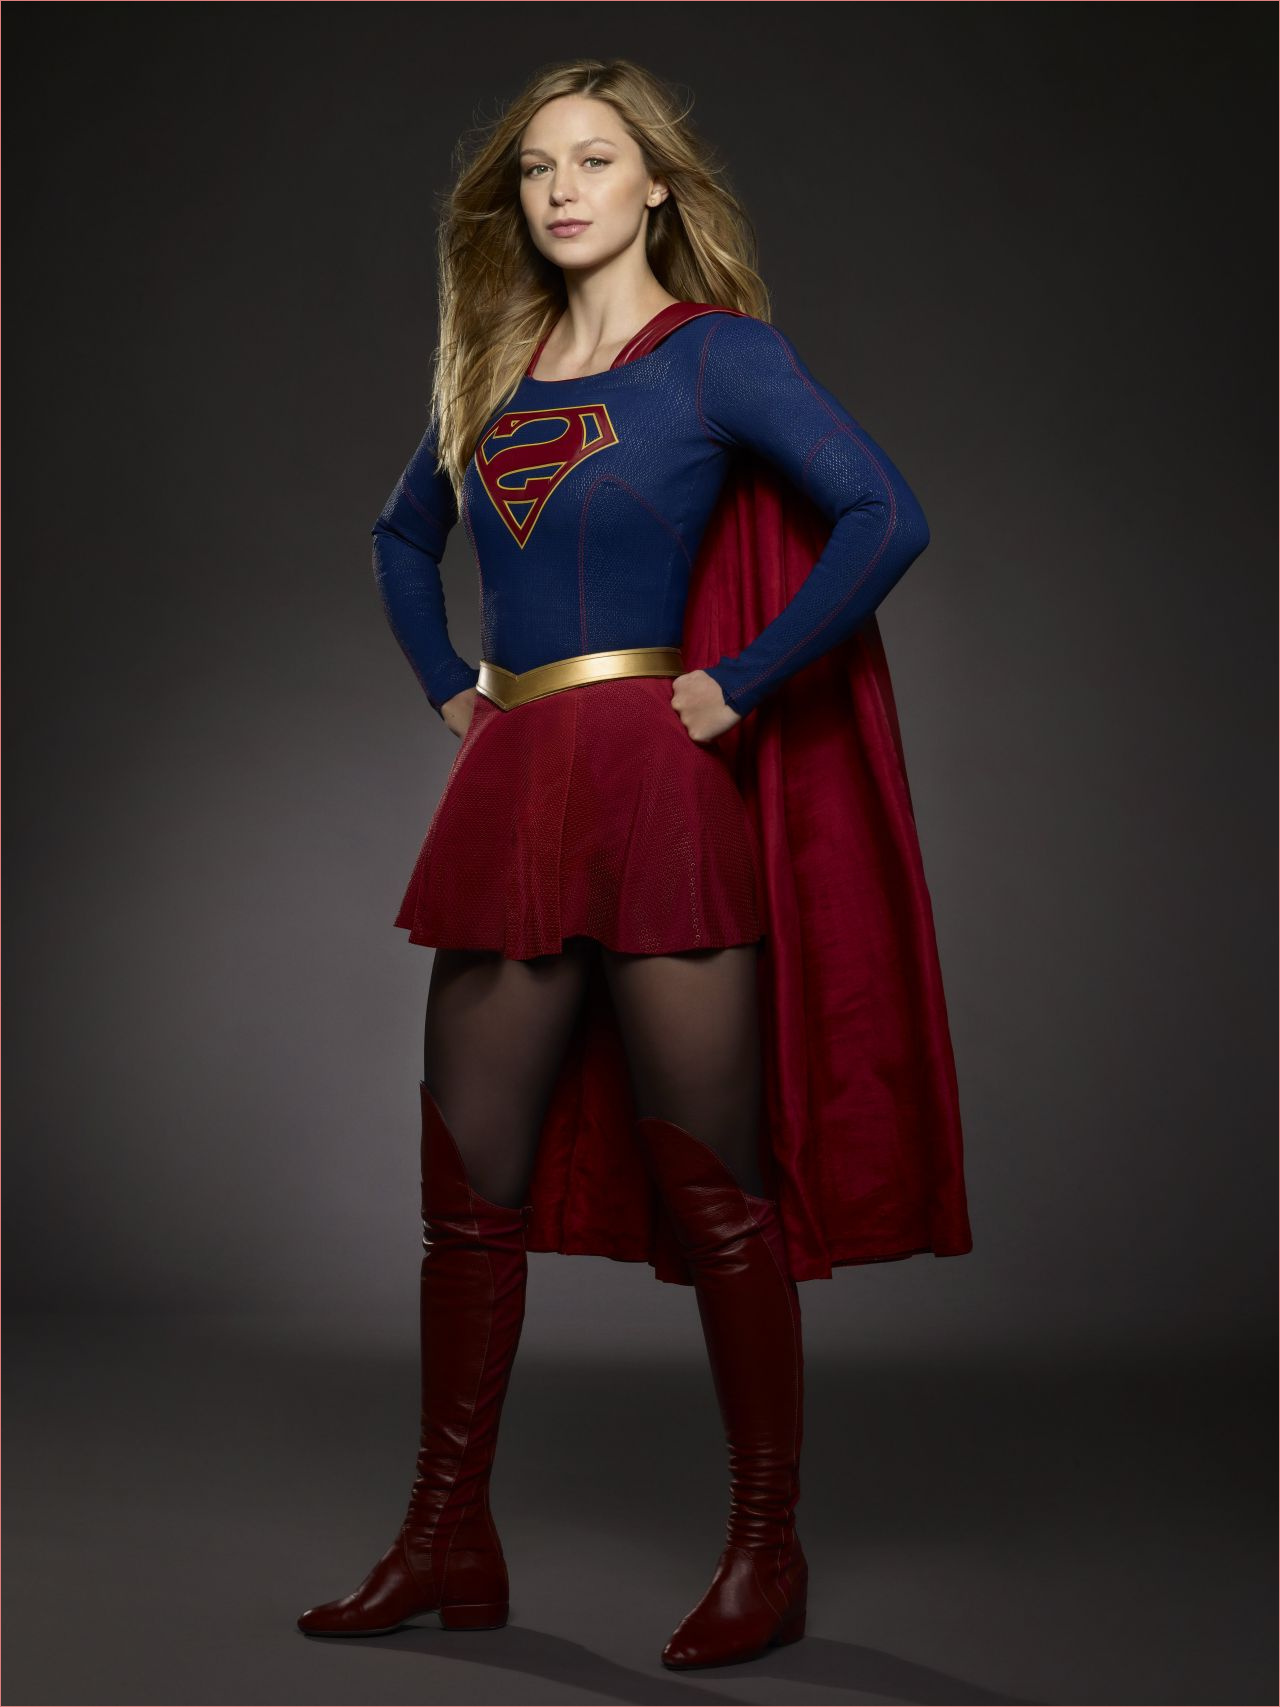 9 meilleur de supergirl coloriage images